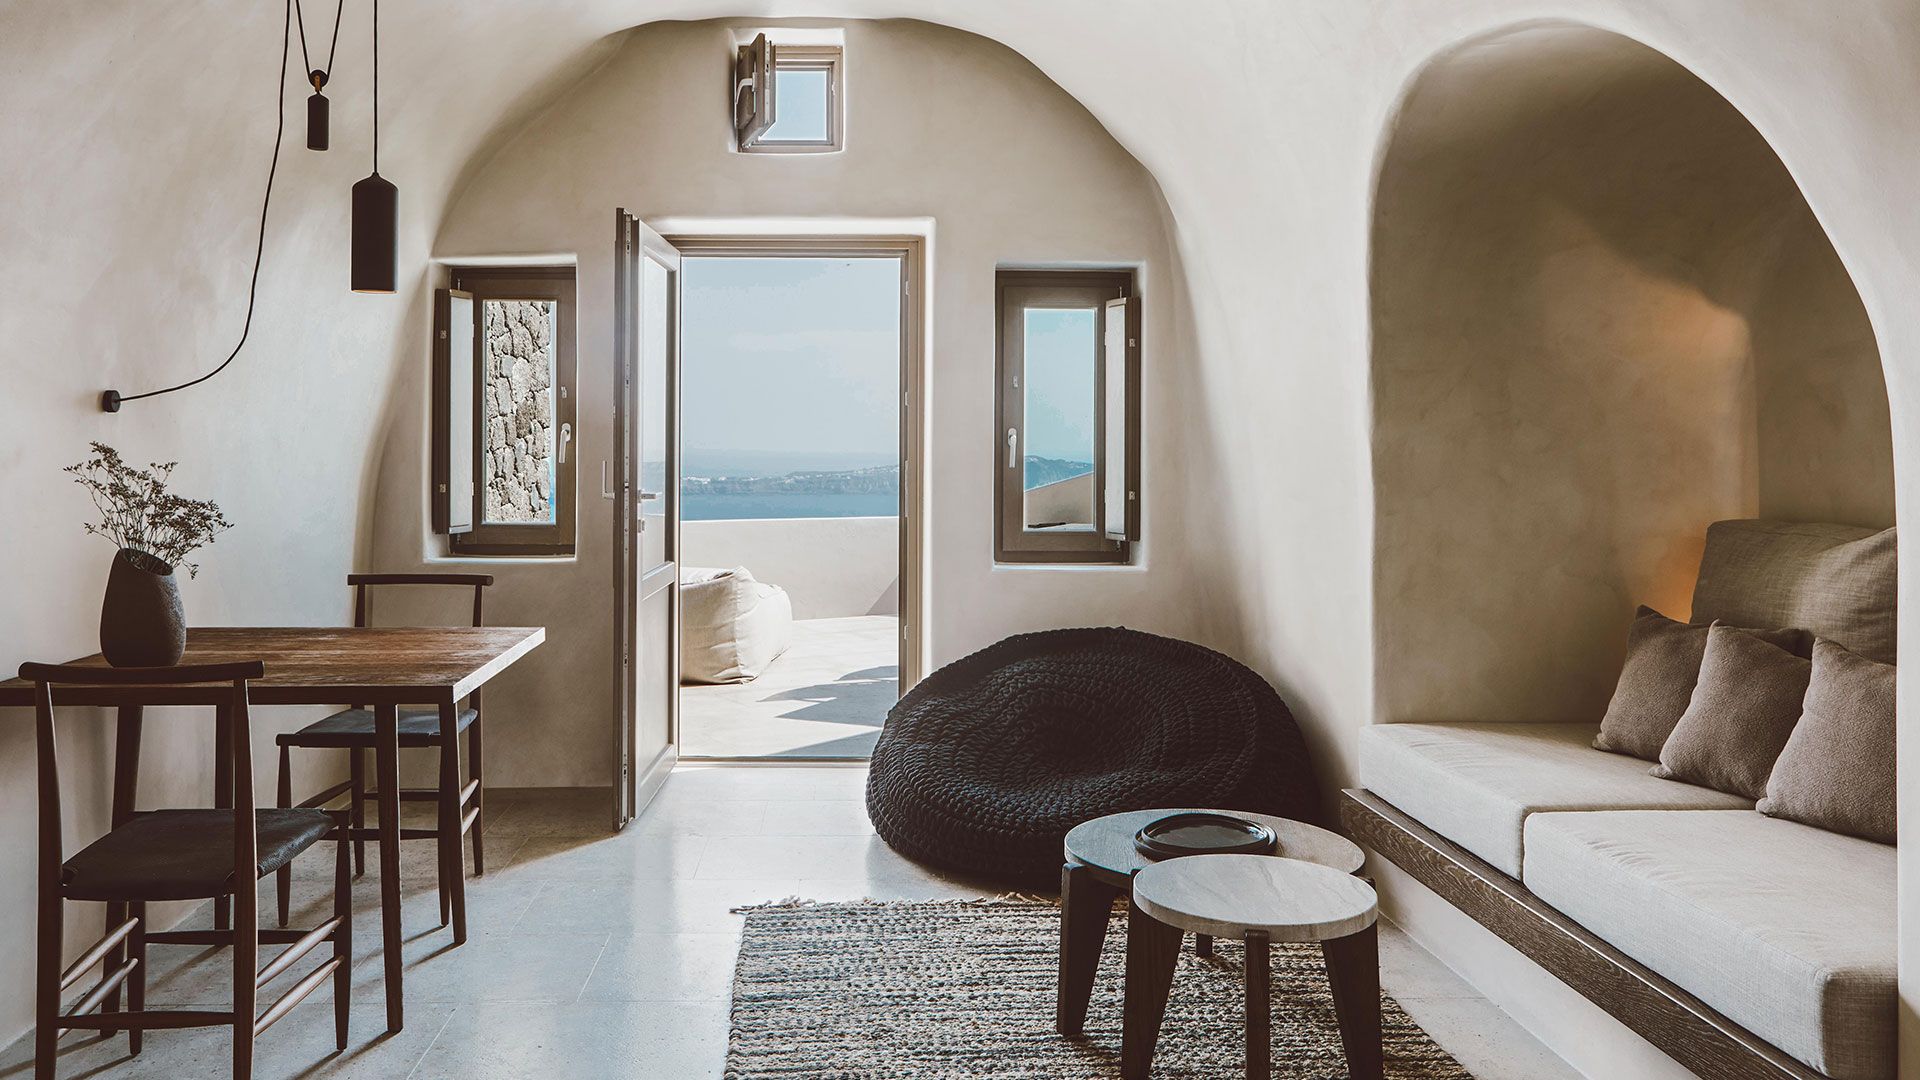 Construction of 3 Luxury Private Villas, Imerovigli, Santorini